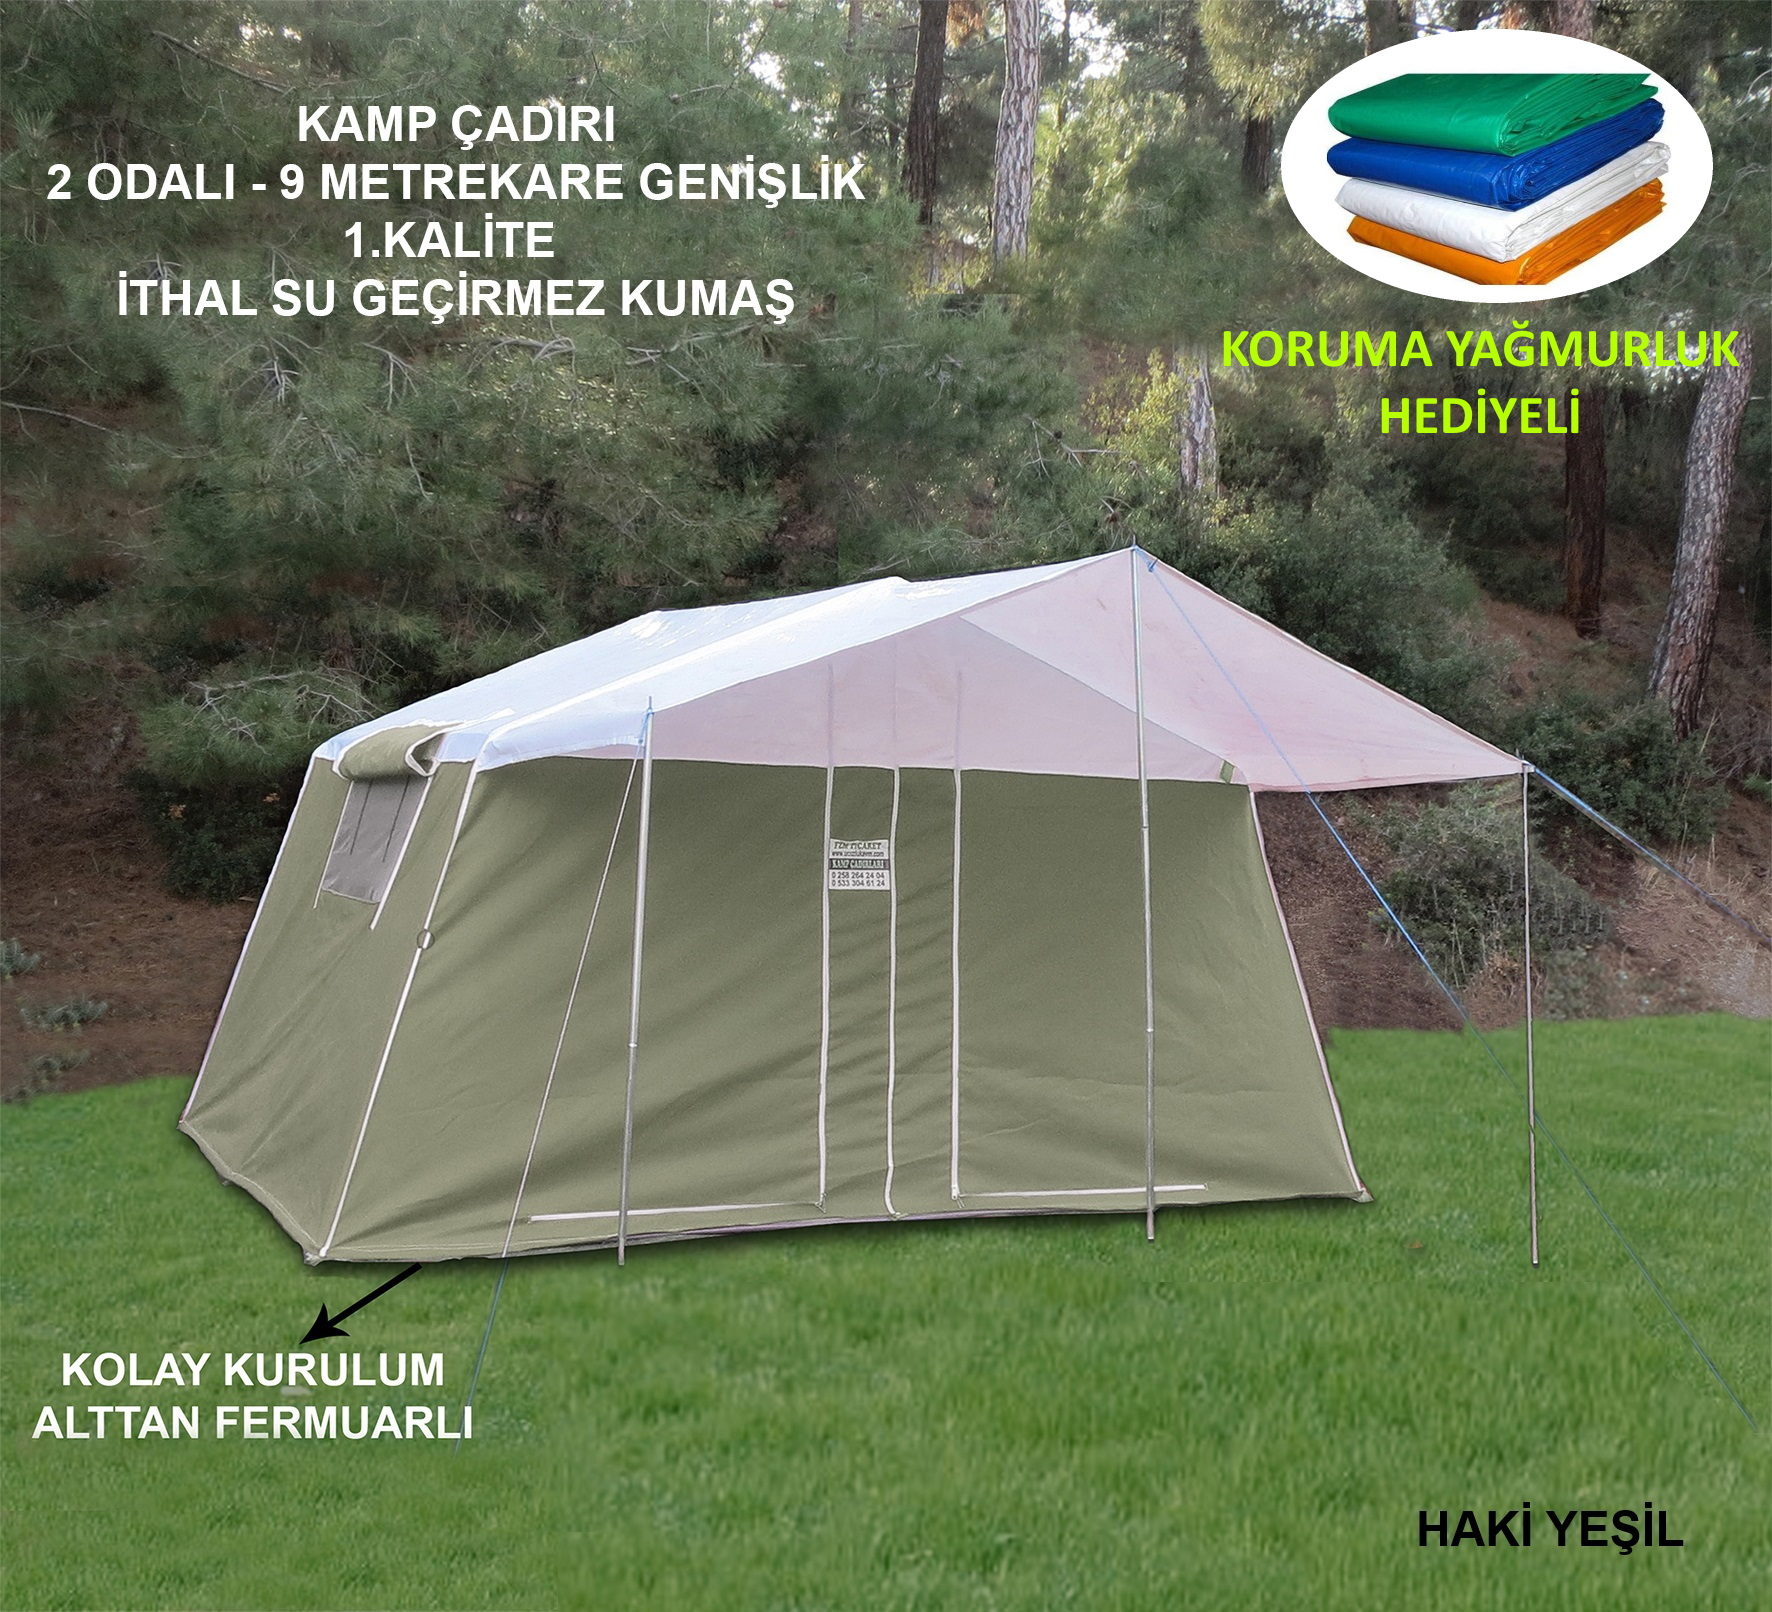 Fzm Açık Haki Yeşil 2 Odalı Kamp Çadırı  + Yağmurluk